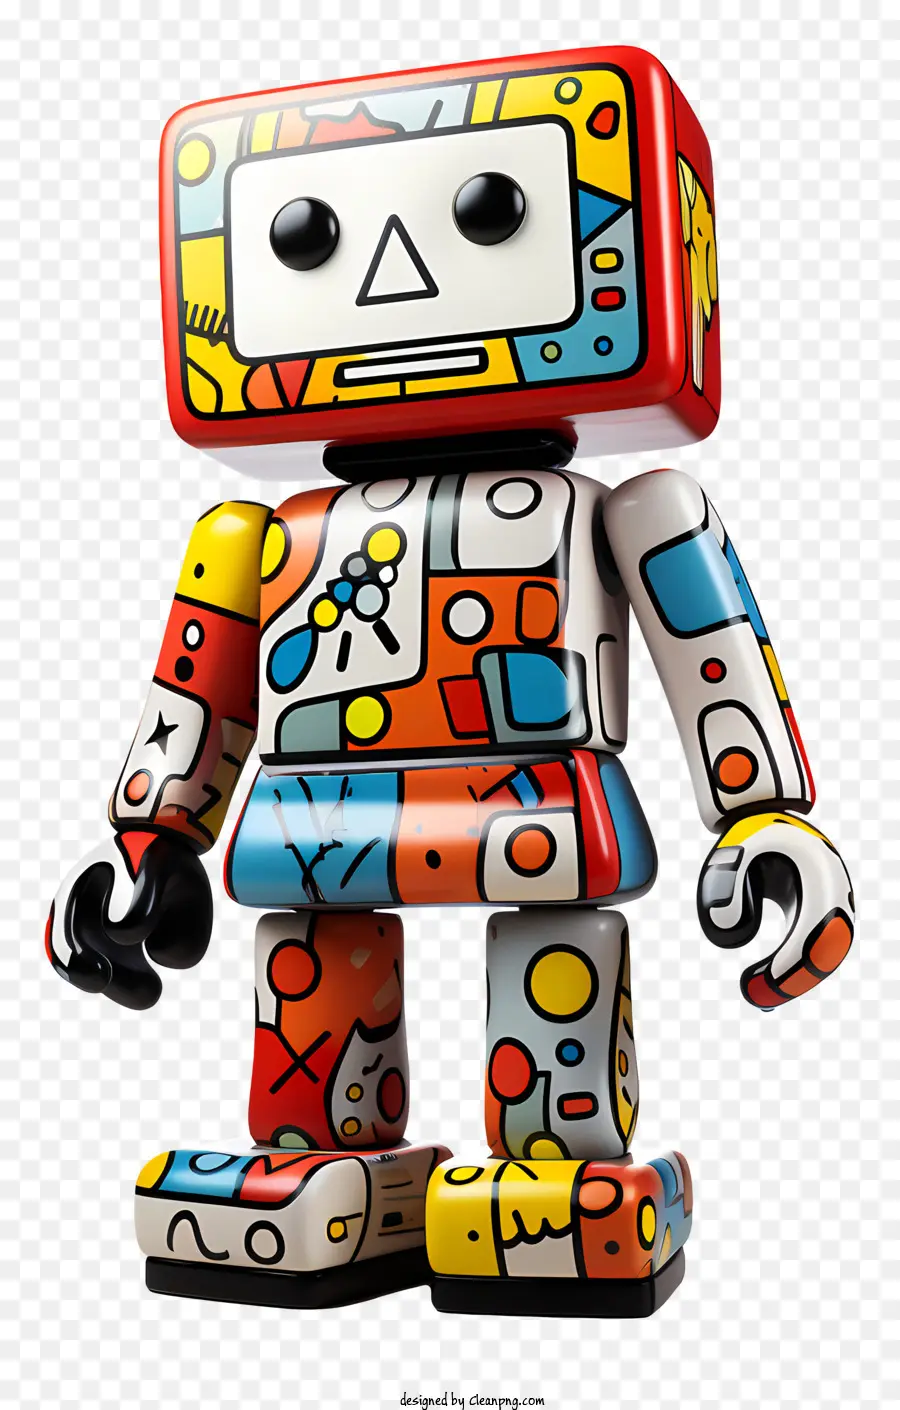 forme geometriche - Robot geometrico colorato con braccia rialzate e testa inclinata